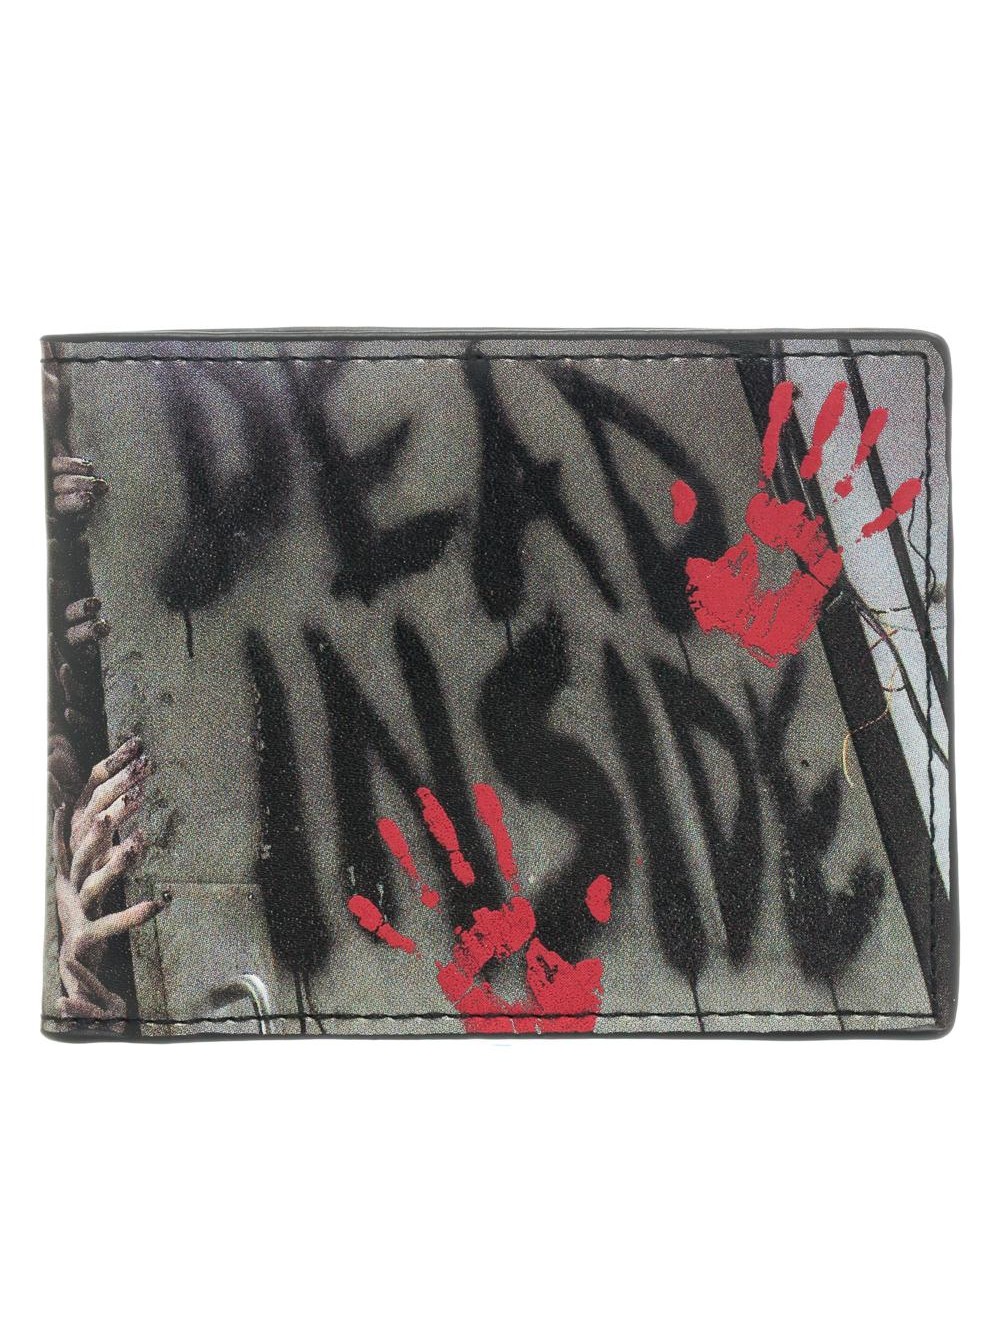 WALKING DEAD - Dead Inside Bi-Fold Wallet Black (SALE) 